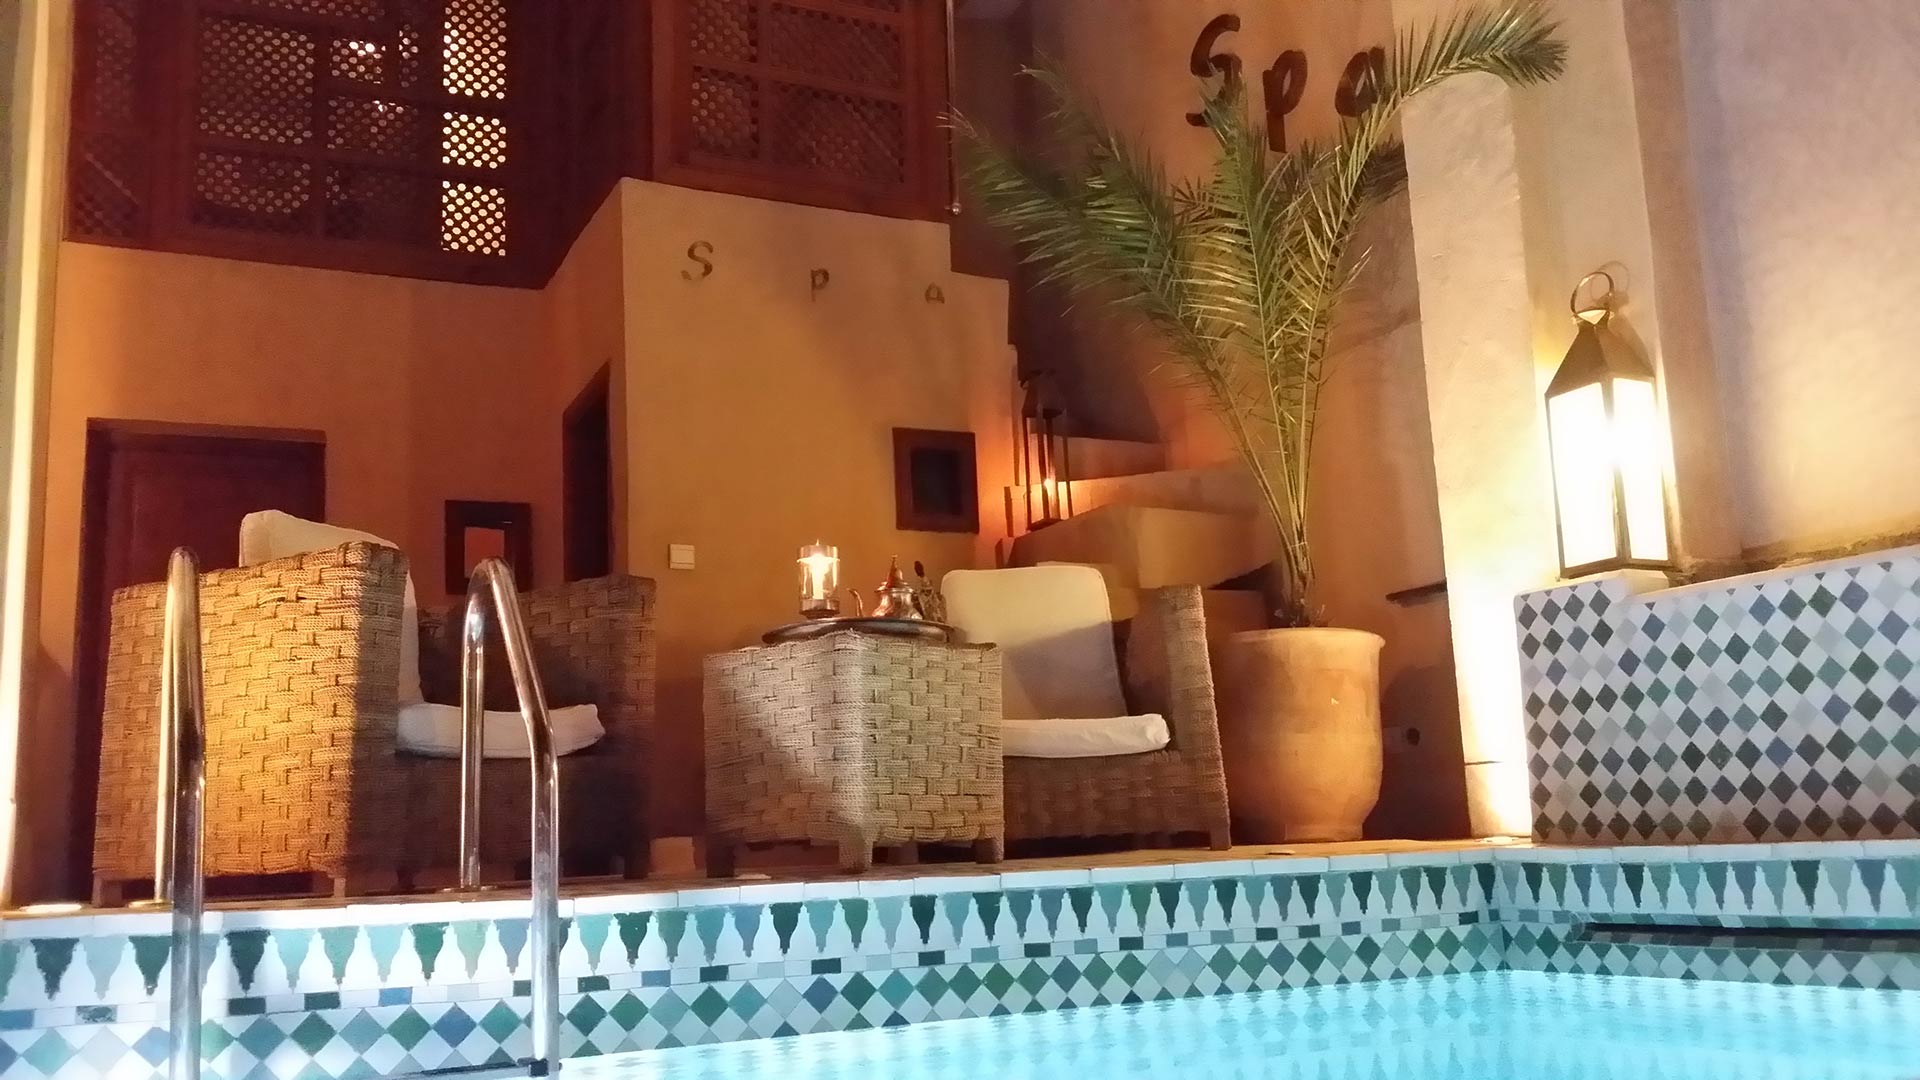 Spa Packages Bains in Marrakech | Riad Al Ksar & Spa